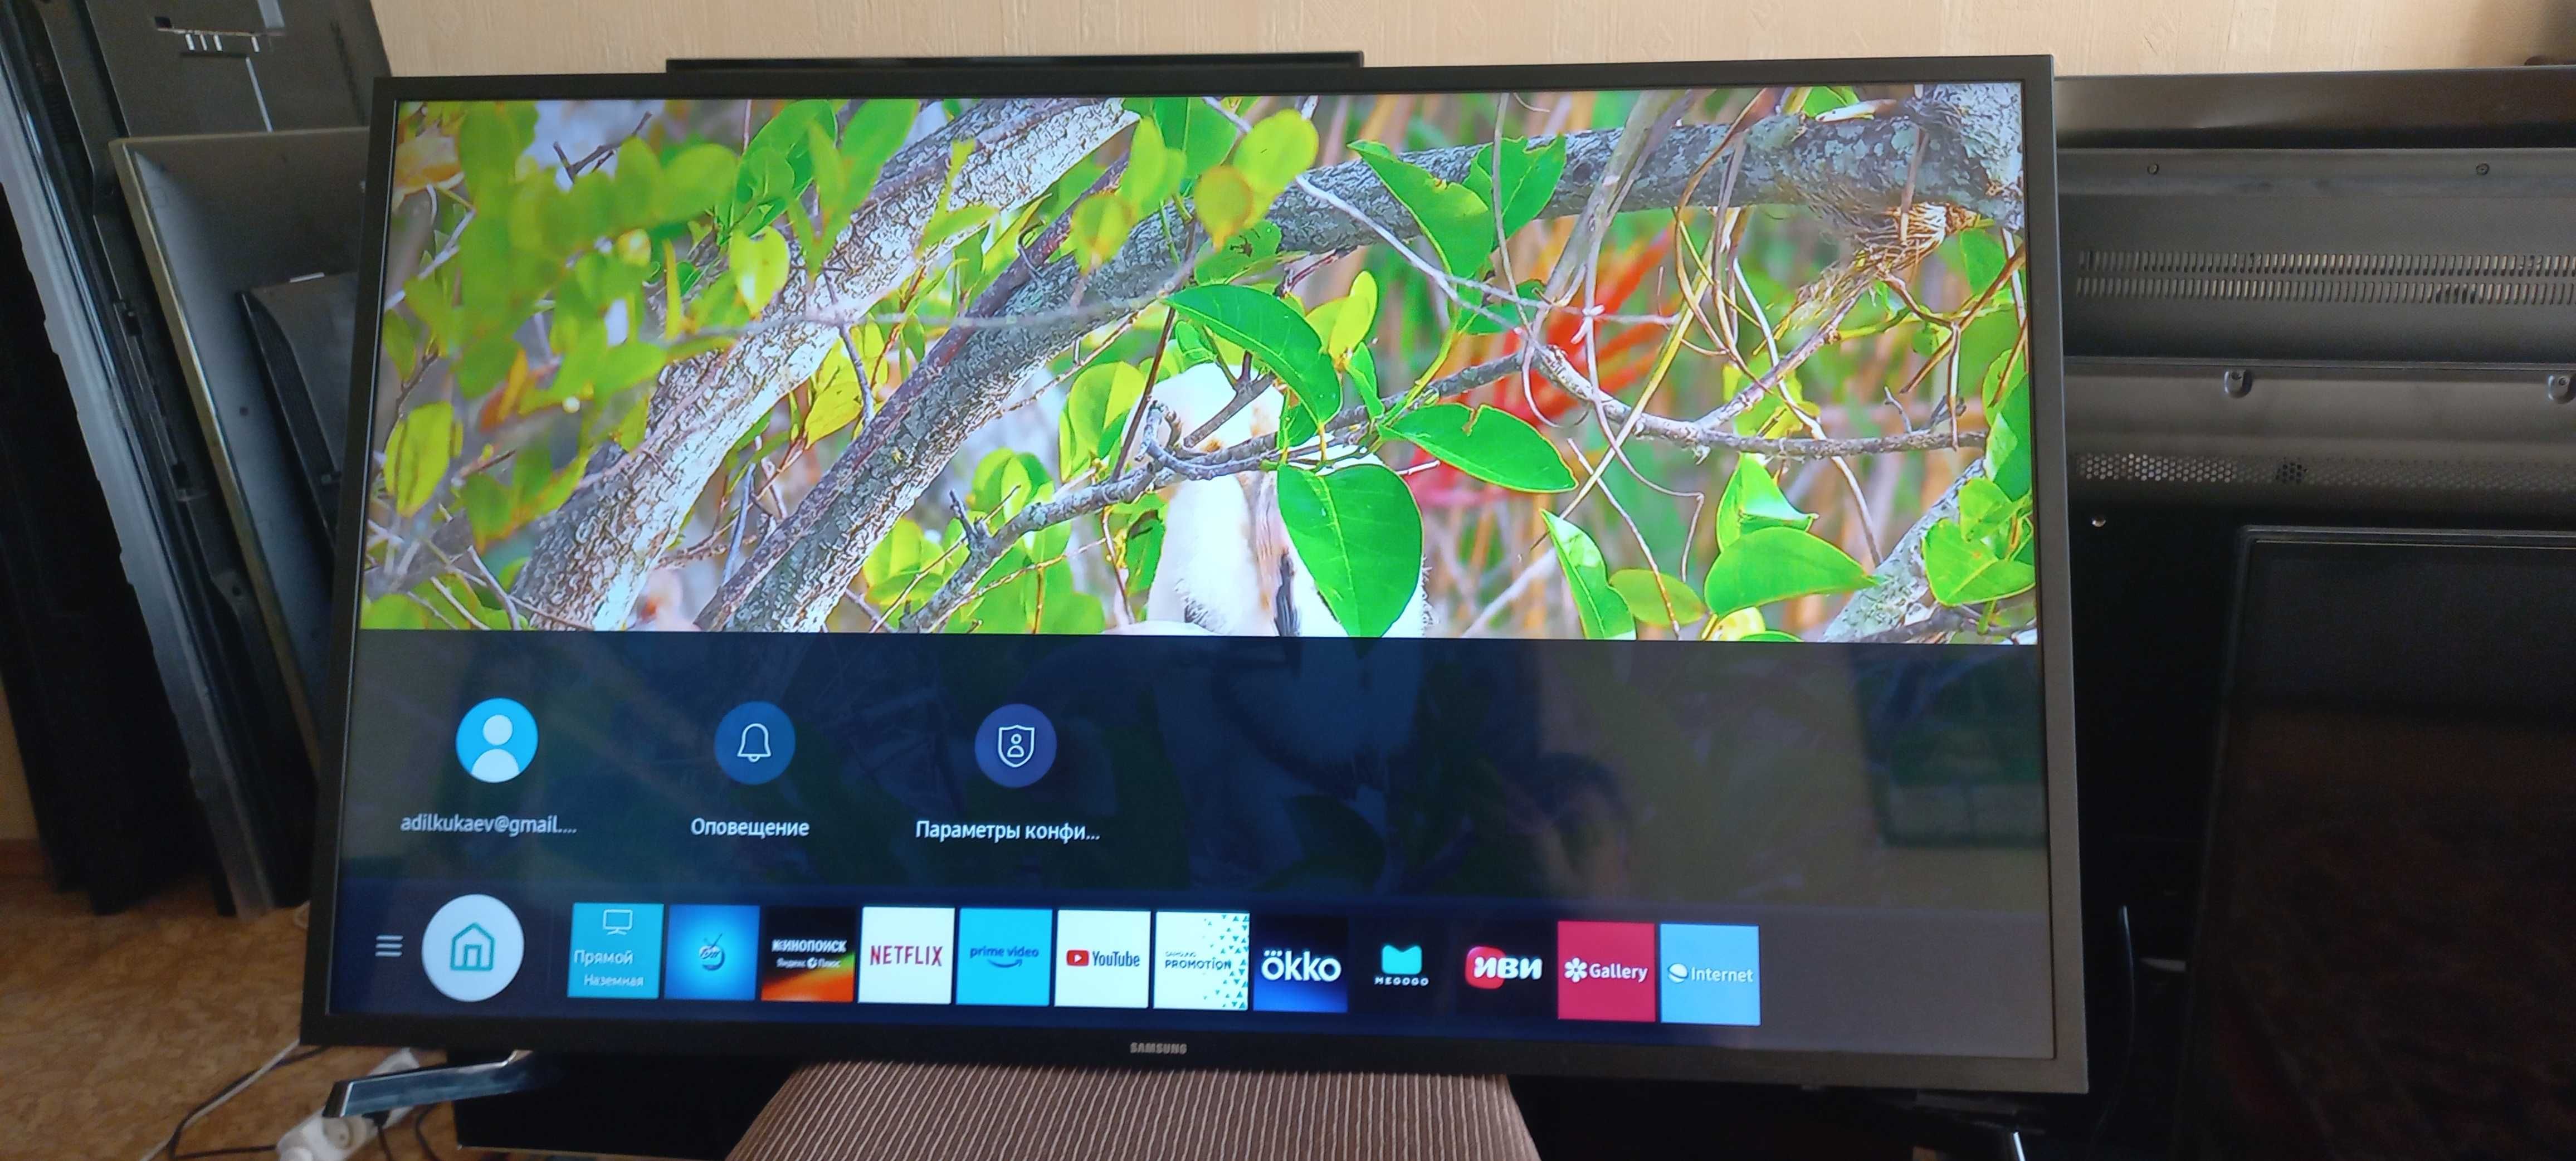 Телевизор samsung  ue43t5300  smart 2021г .смарт гарантия